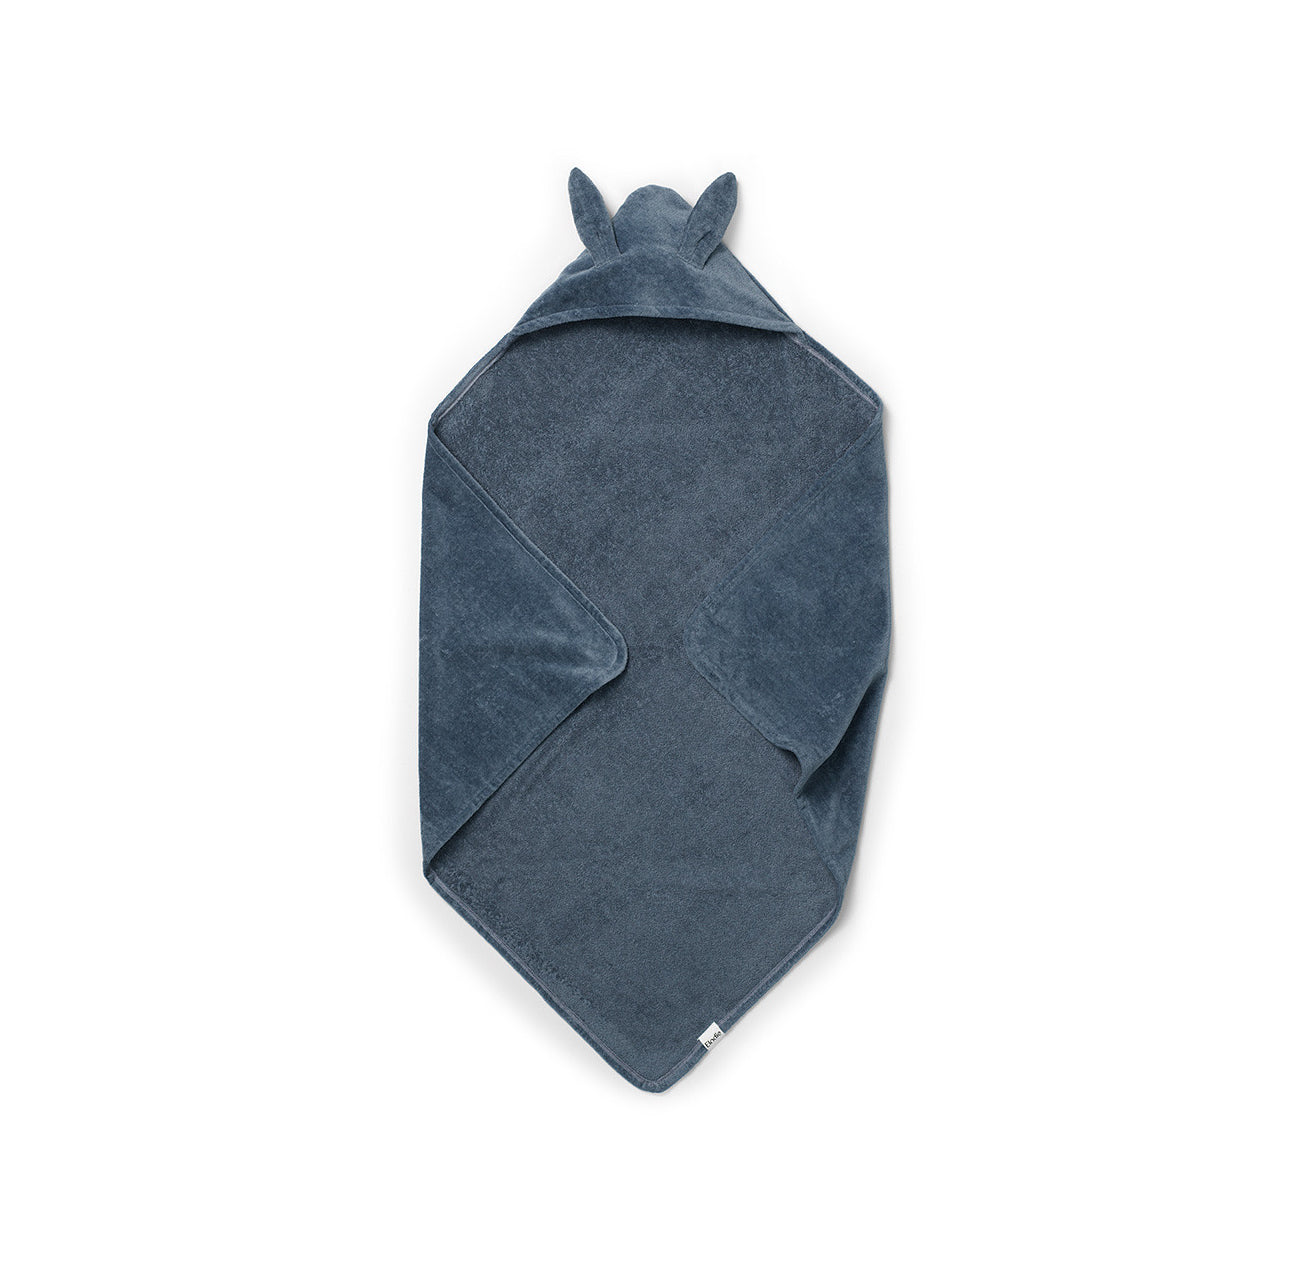 ELODIE - Tender Blue Bunny | 80x80 cm